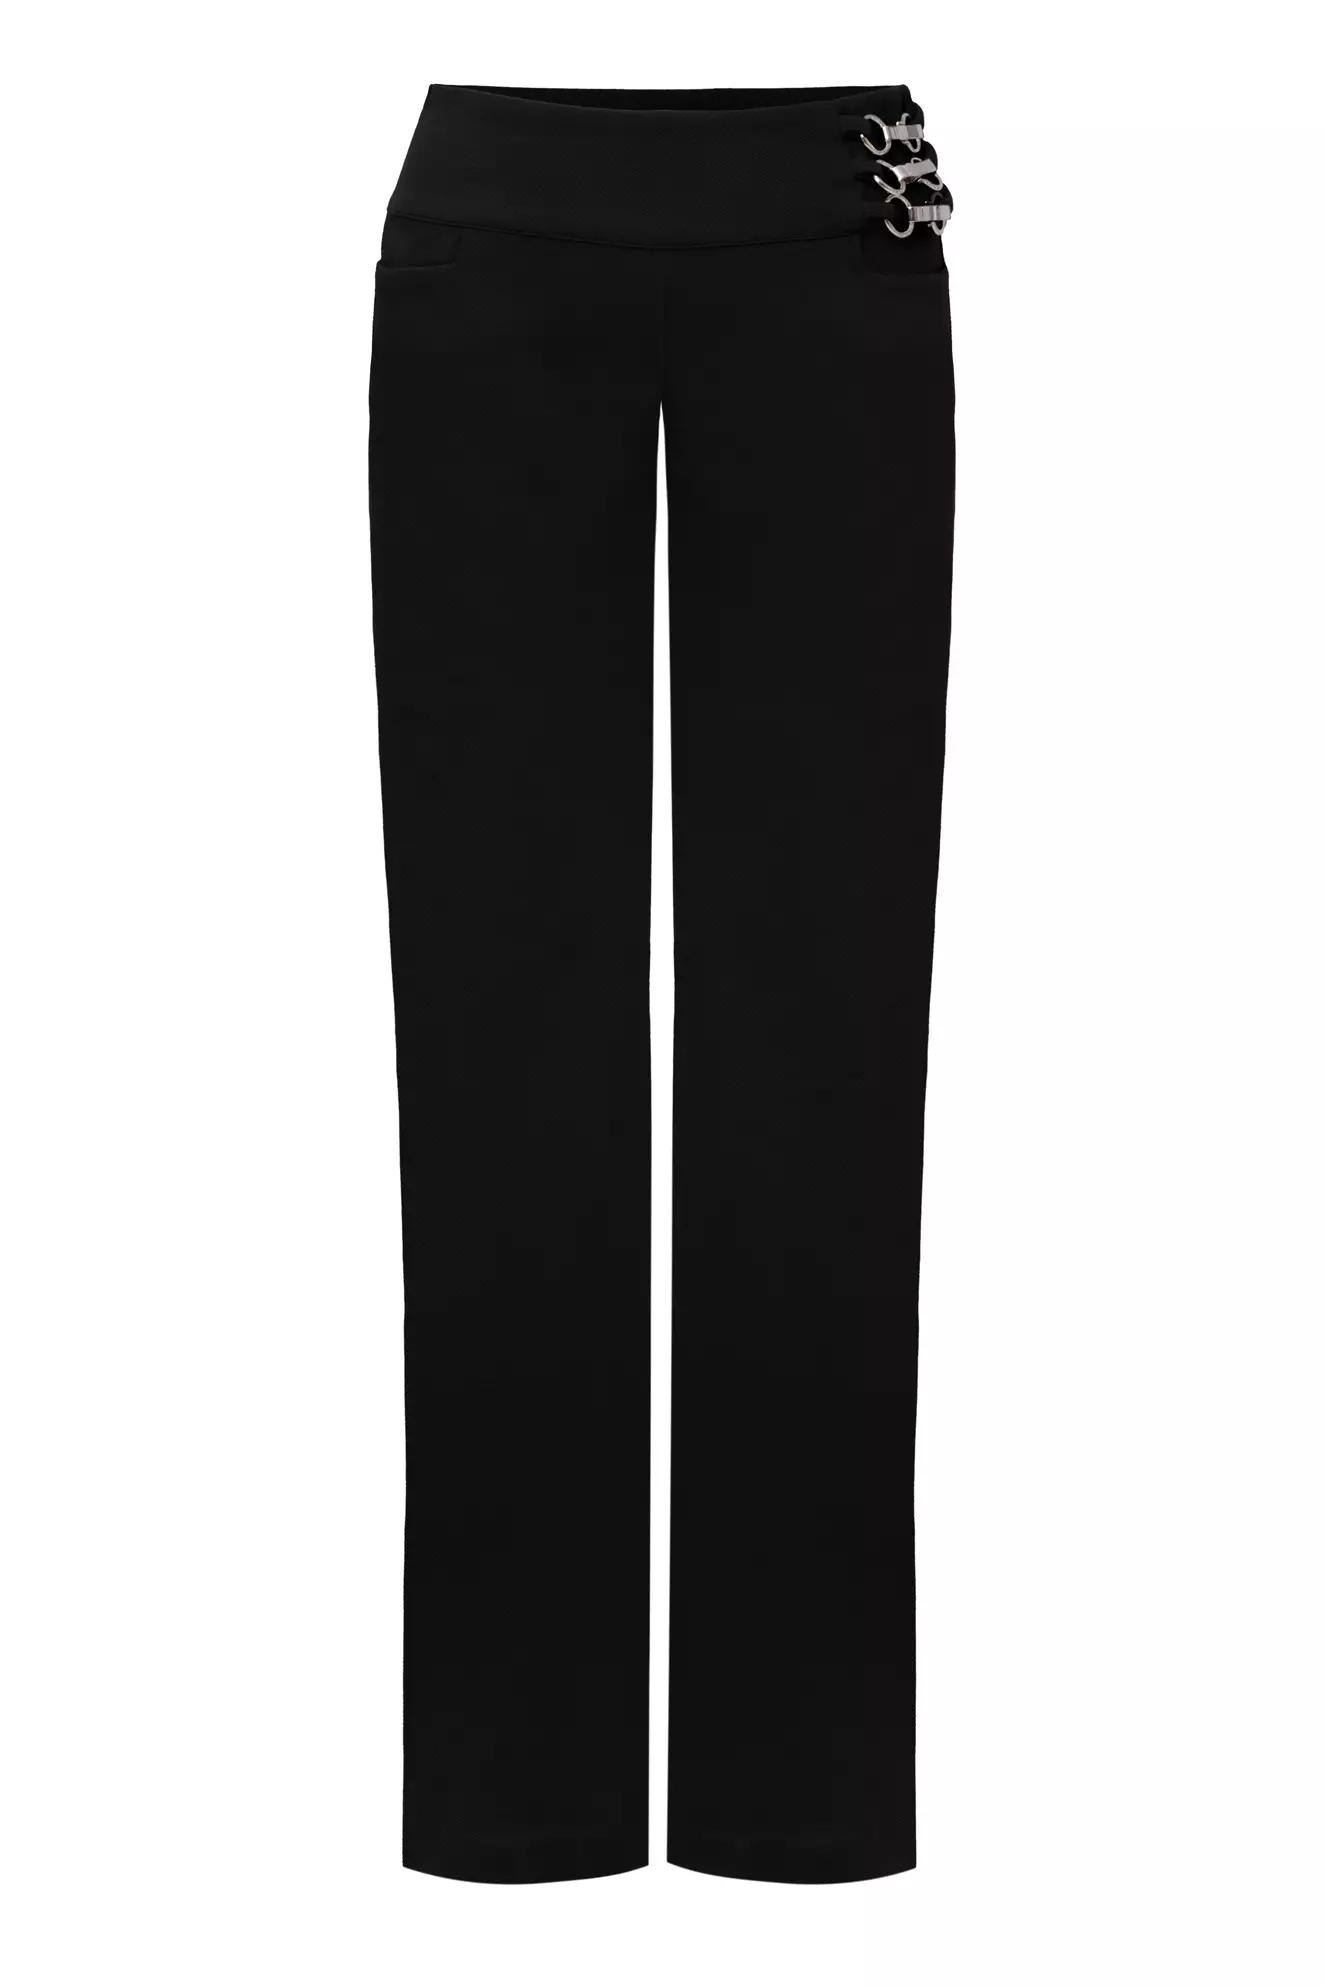 Black felisha long pants